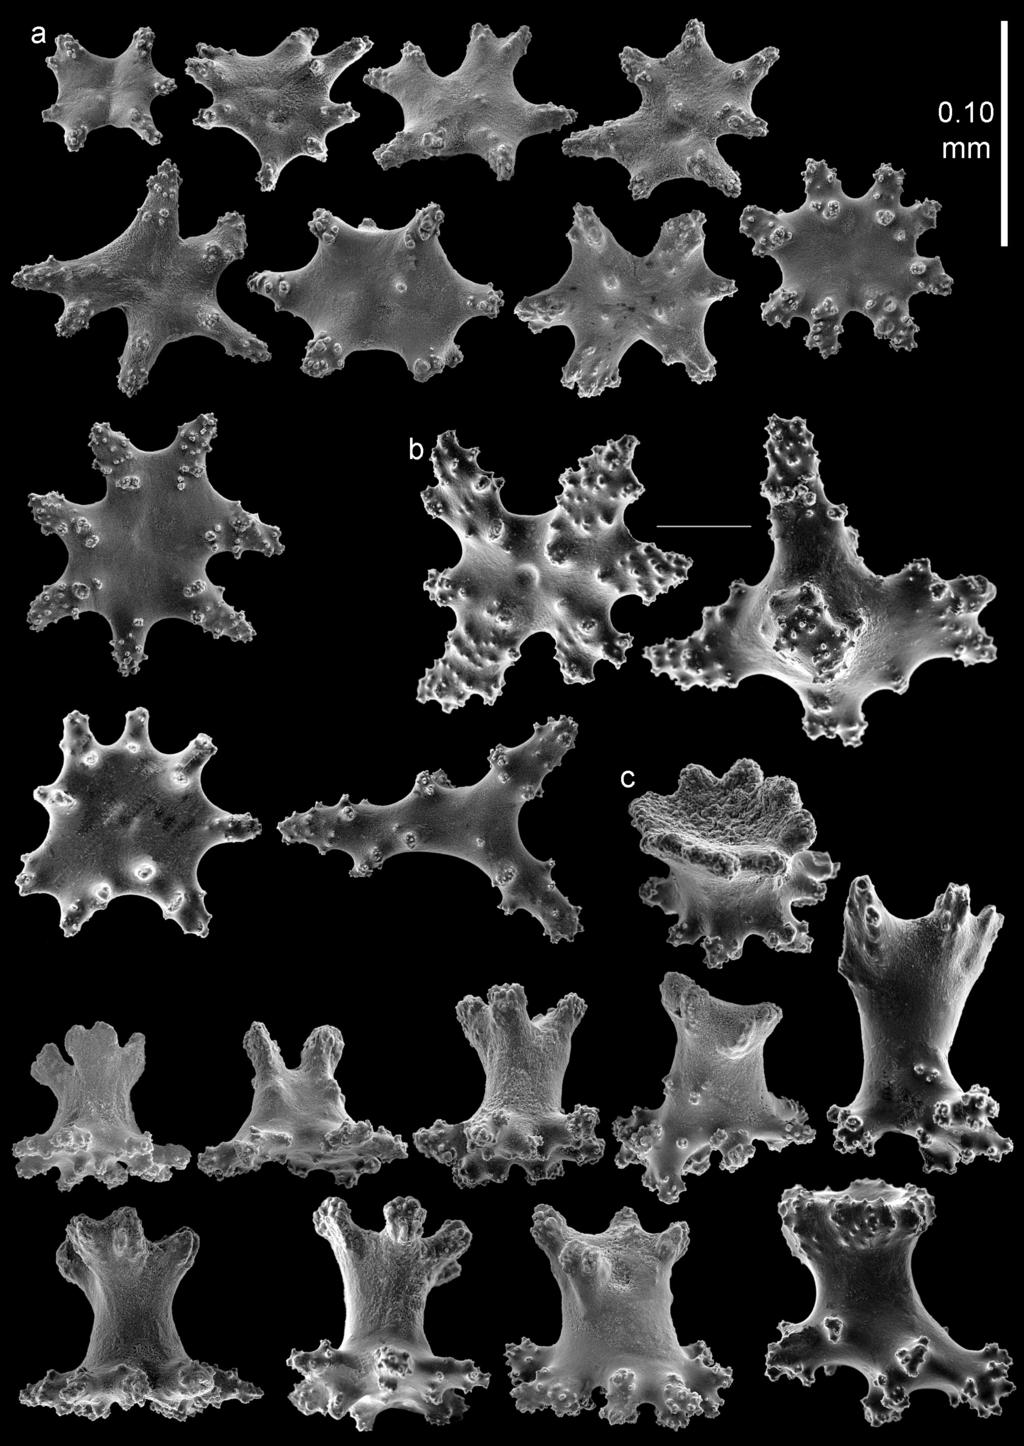 8 Asako K. Matsumoto & Leen P. van Ofwegen / ZooKeys 587: 1 20 (2016) Figure 4. Bebryce otsuchiensis sp. n.